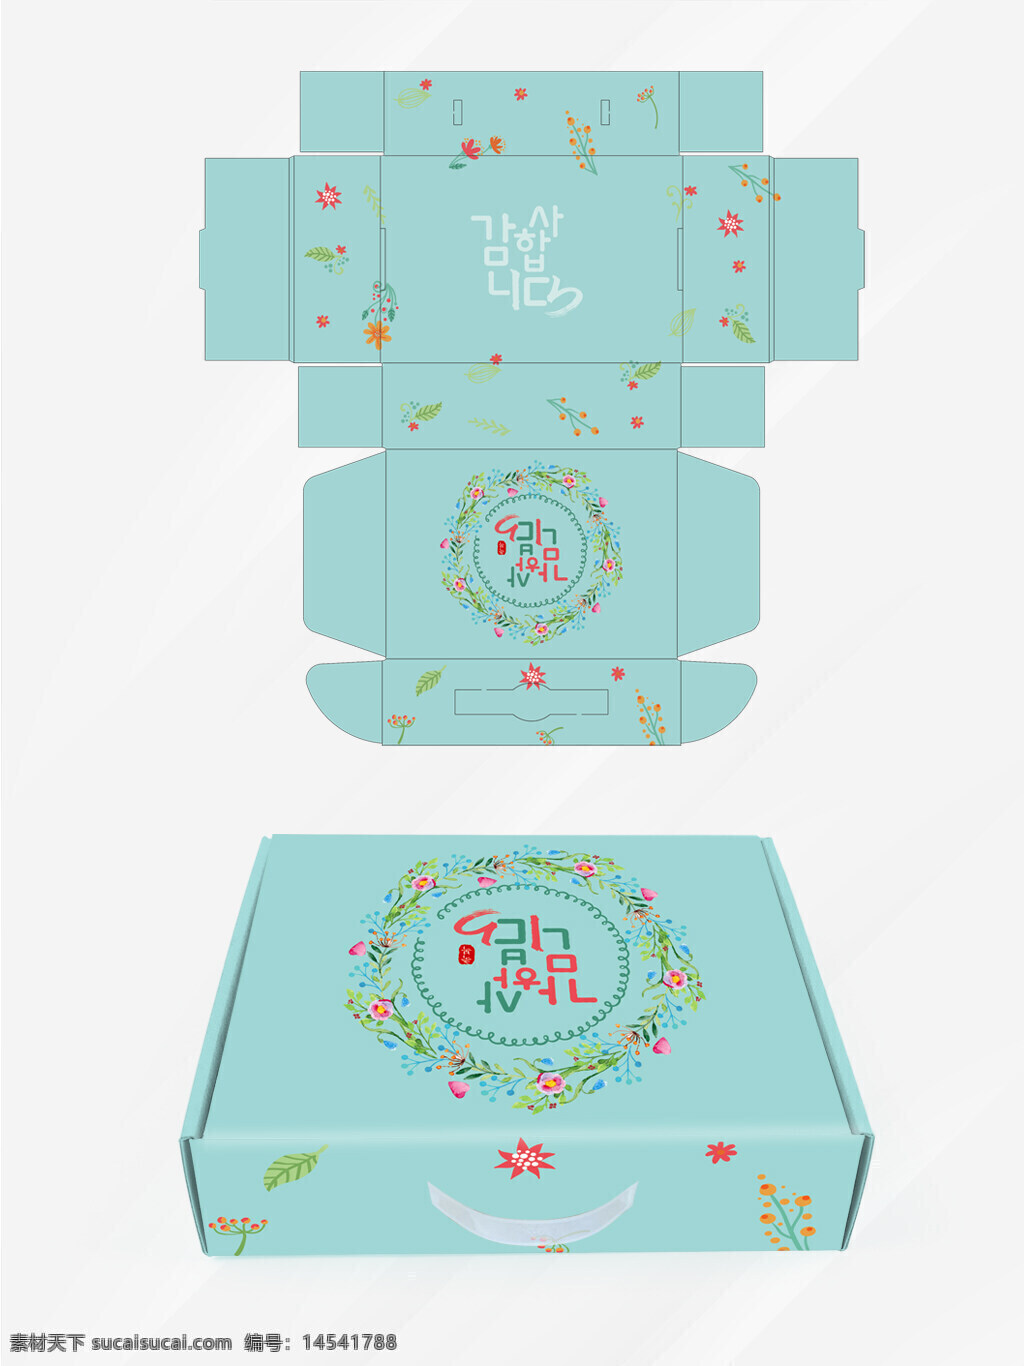 韩式礼品飞机包装盒 韩式礼品盒 韩式礼品包装盒 韩式礼品包装 礼品盒 韩式风格